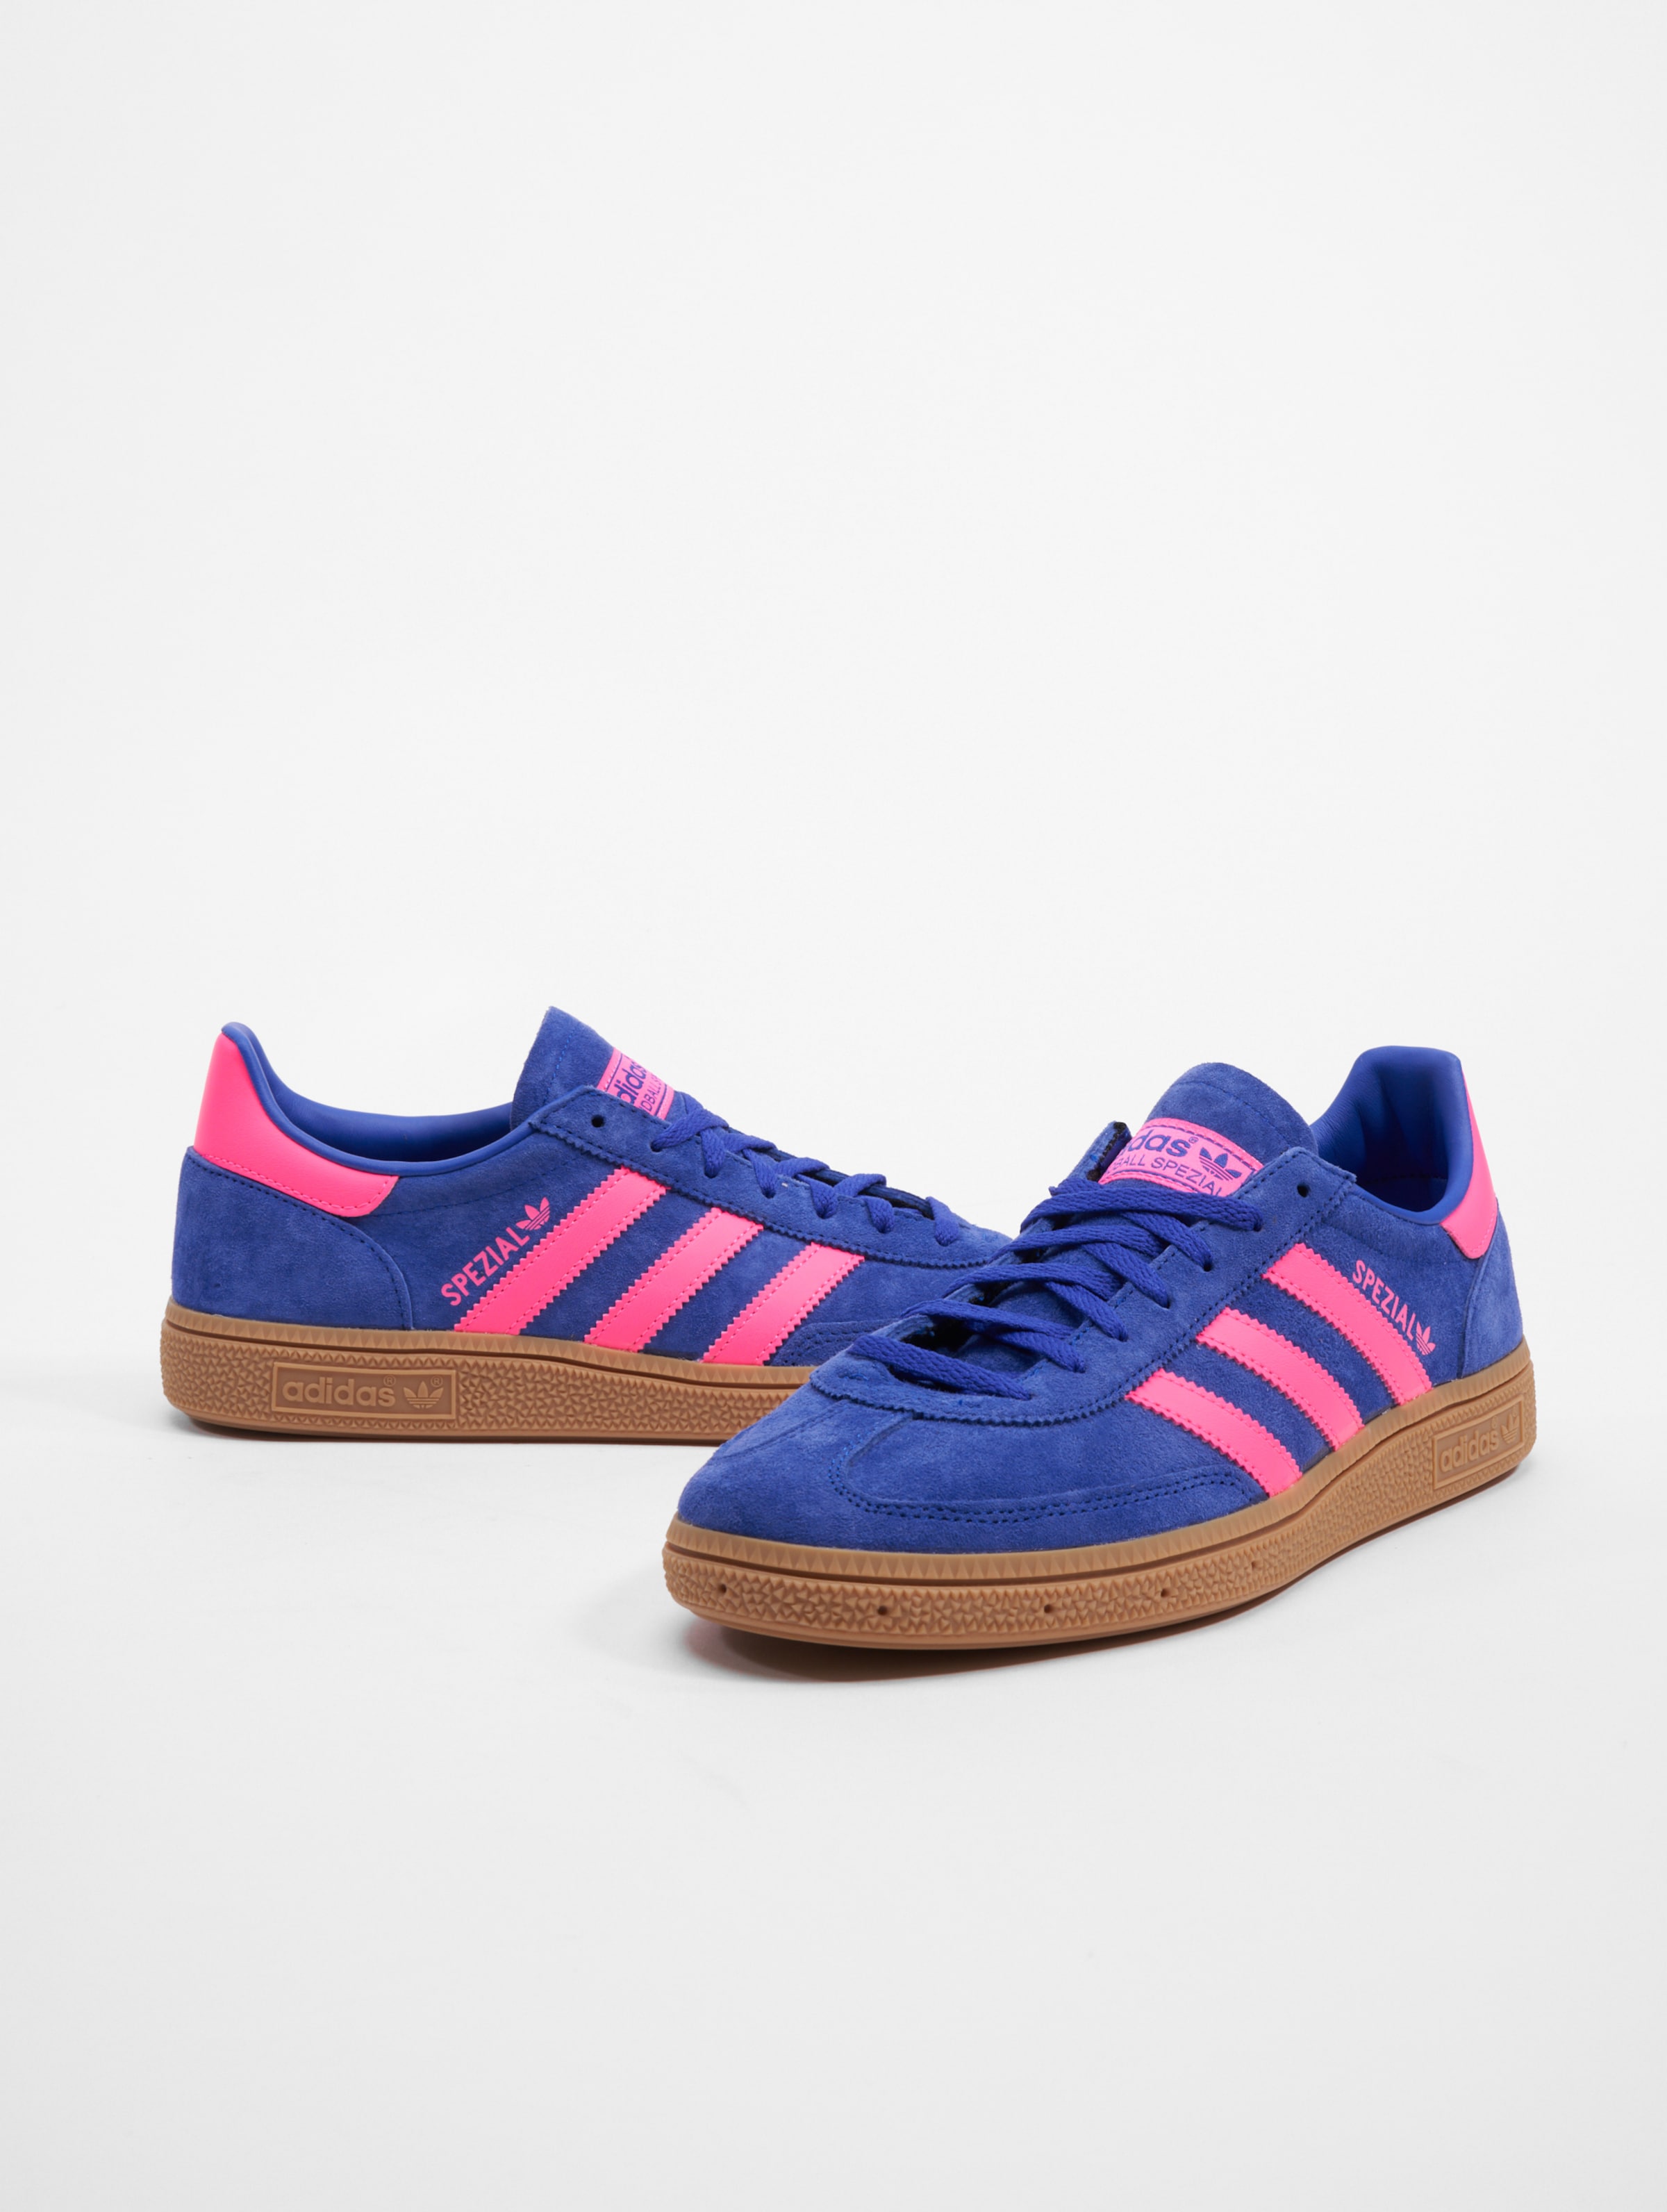 adidas Originals Handball Spezial Sneakers Frauen,Männer,Unisex op kleur blauw, Maat 40 2/3